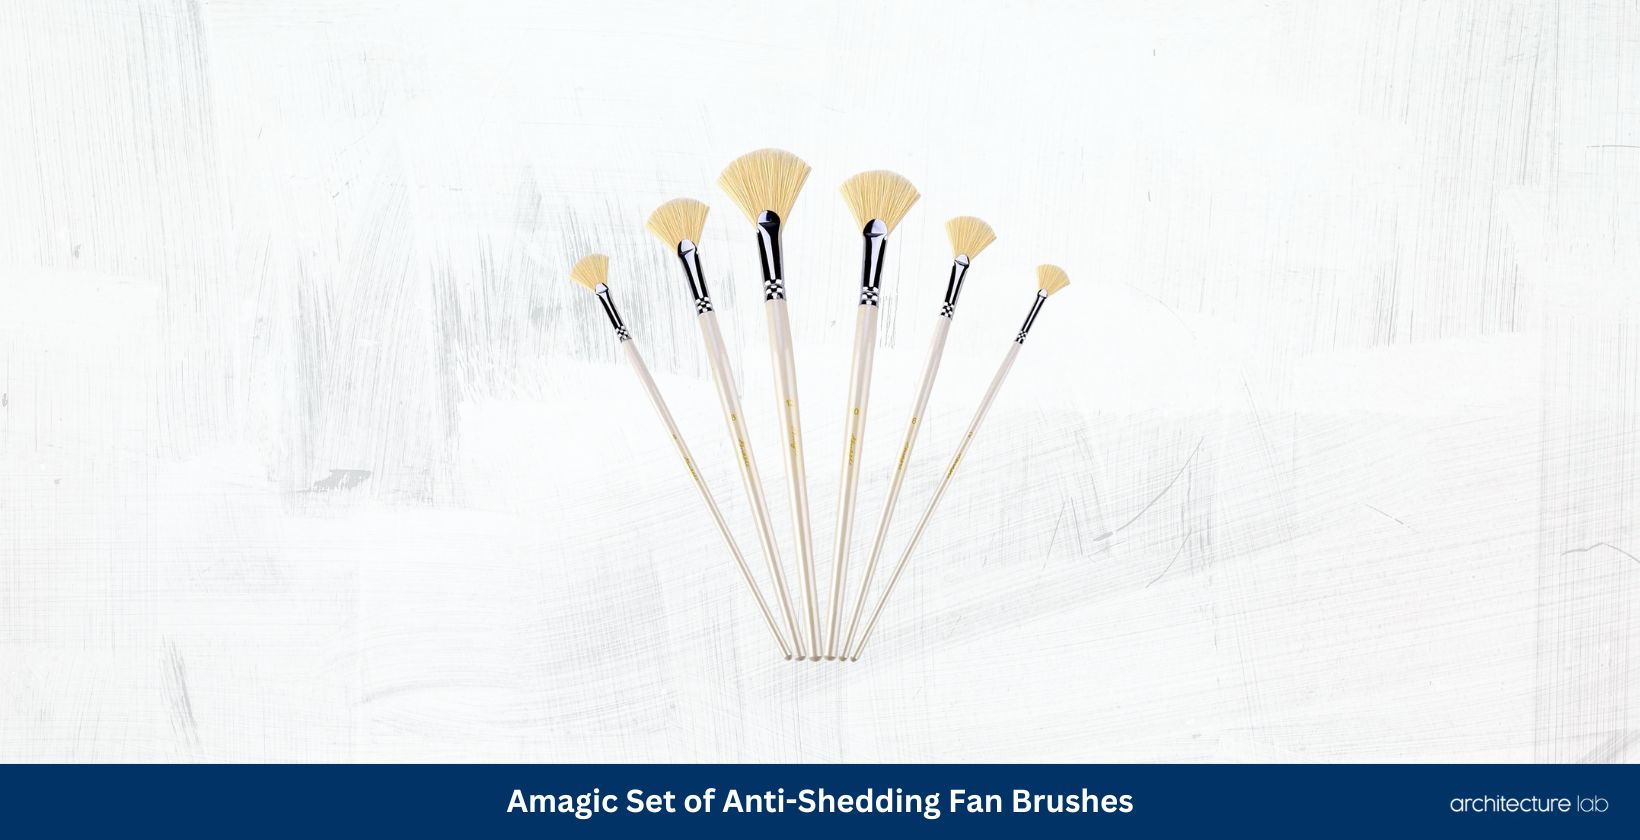 Amagic set of anti shedding fan brushes